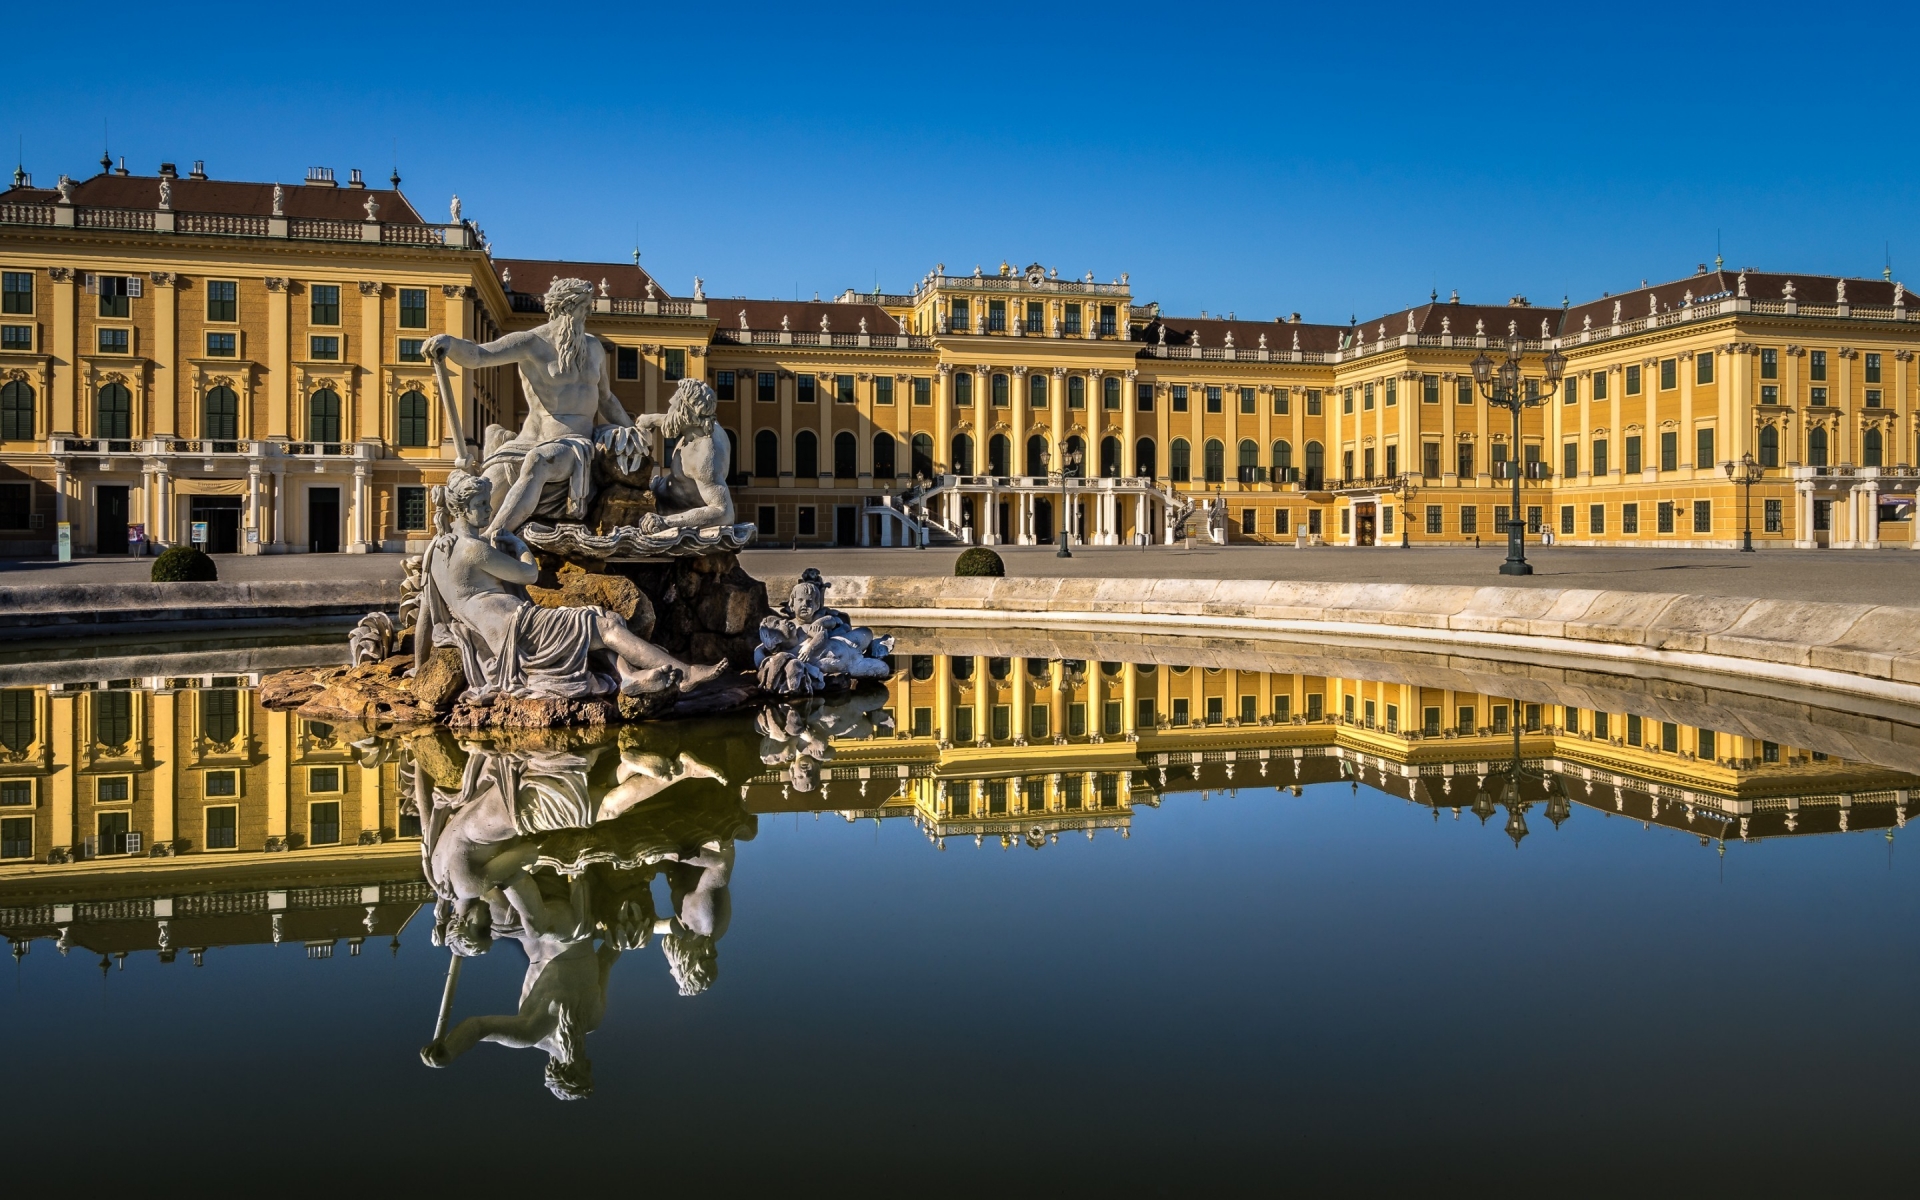 Schonbrunn Palace View for 1920 x 1200 widescreen resolution